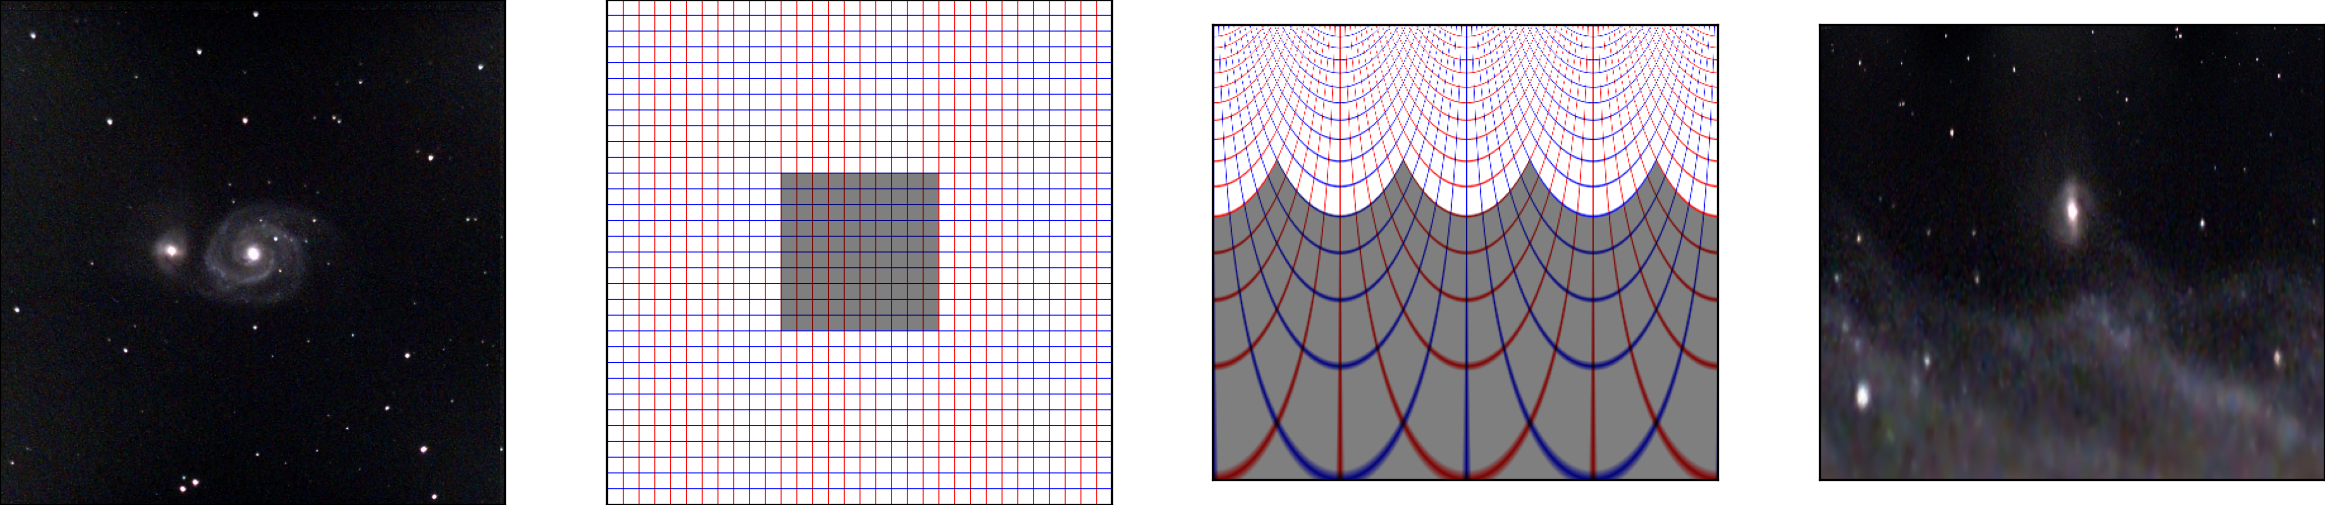 Figure 1: Rétinotopie. Une image de la galaxie du Tourbillon (photo © Laurent Perrinet, 6 minutes d’exposition avec un evScope) peut être cartographiée sur une grille régulière dénotée ici par des lignes verticales (en rouge) et horizontales (en bleu). La rétinotopie transforme radicalement cette grille, et en particulier la zone représentant la fovéa (en gris) occupe environ la moitié de l’espace dans l’espace rétinien. Appliquée à l’image originale de la galaxie, l’image est déformée et représente plus finement les parties sous l’axe de vue (ici le cœur de la galaxie) et transforme les bras spiralés de la galaxie en segments.